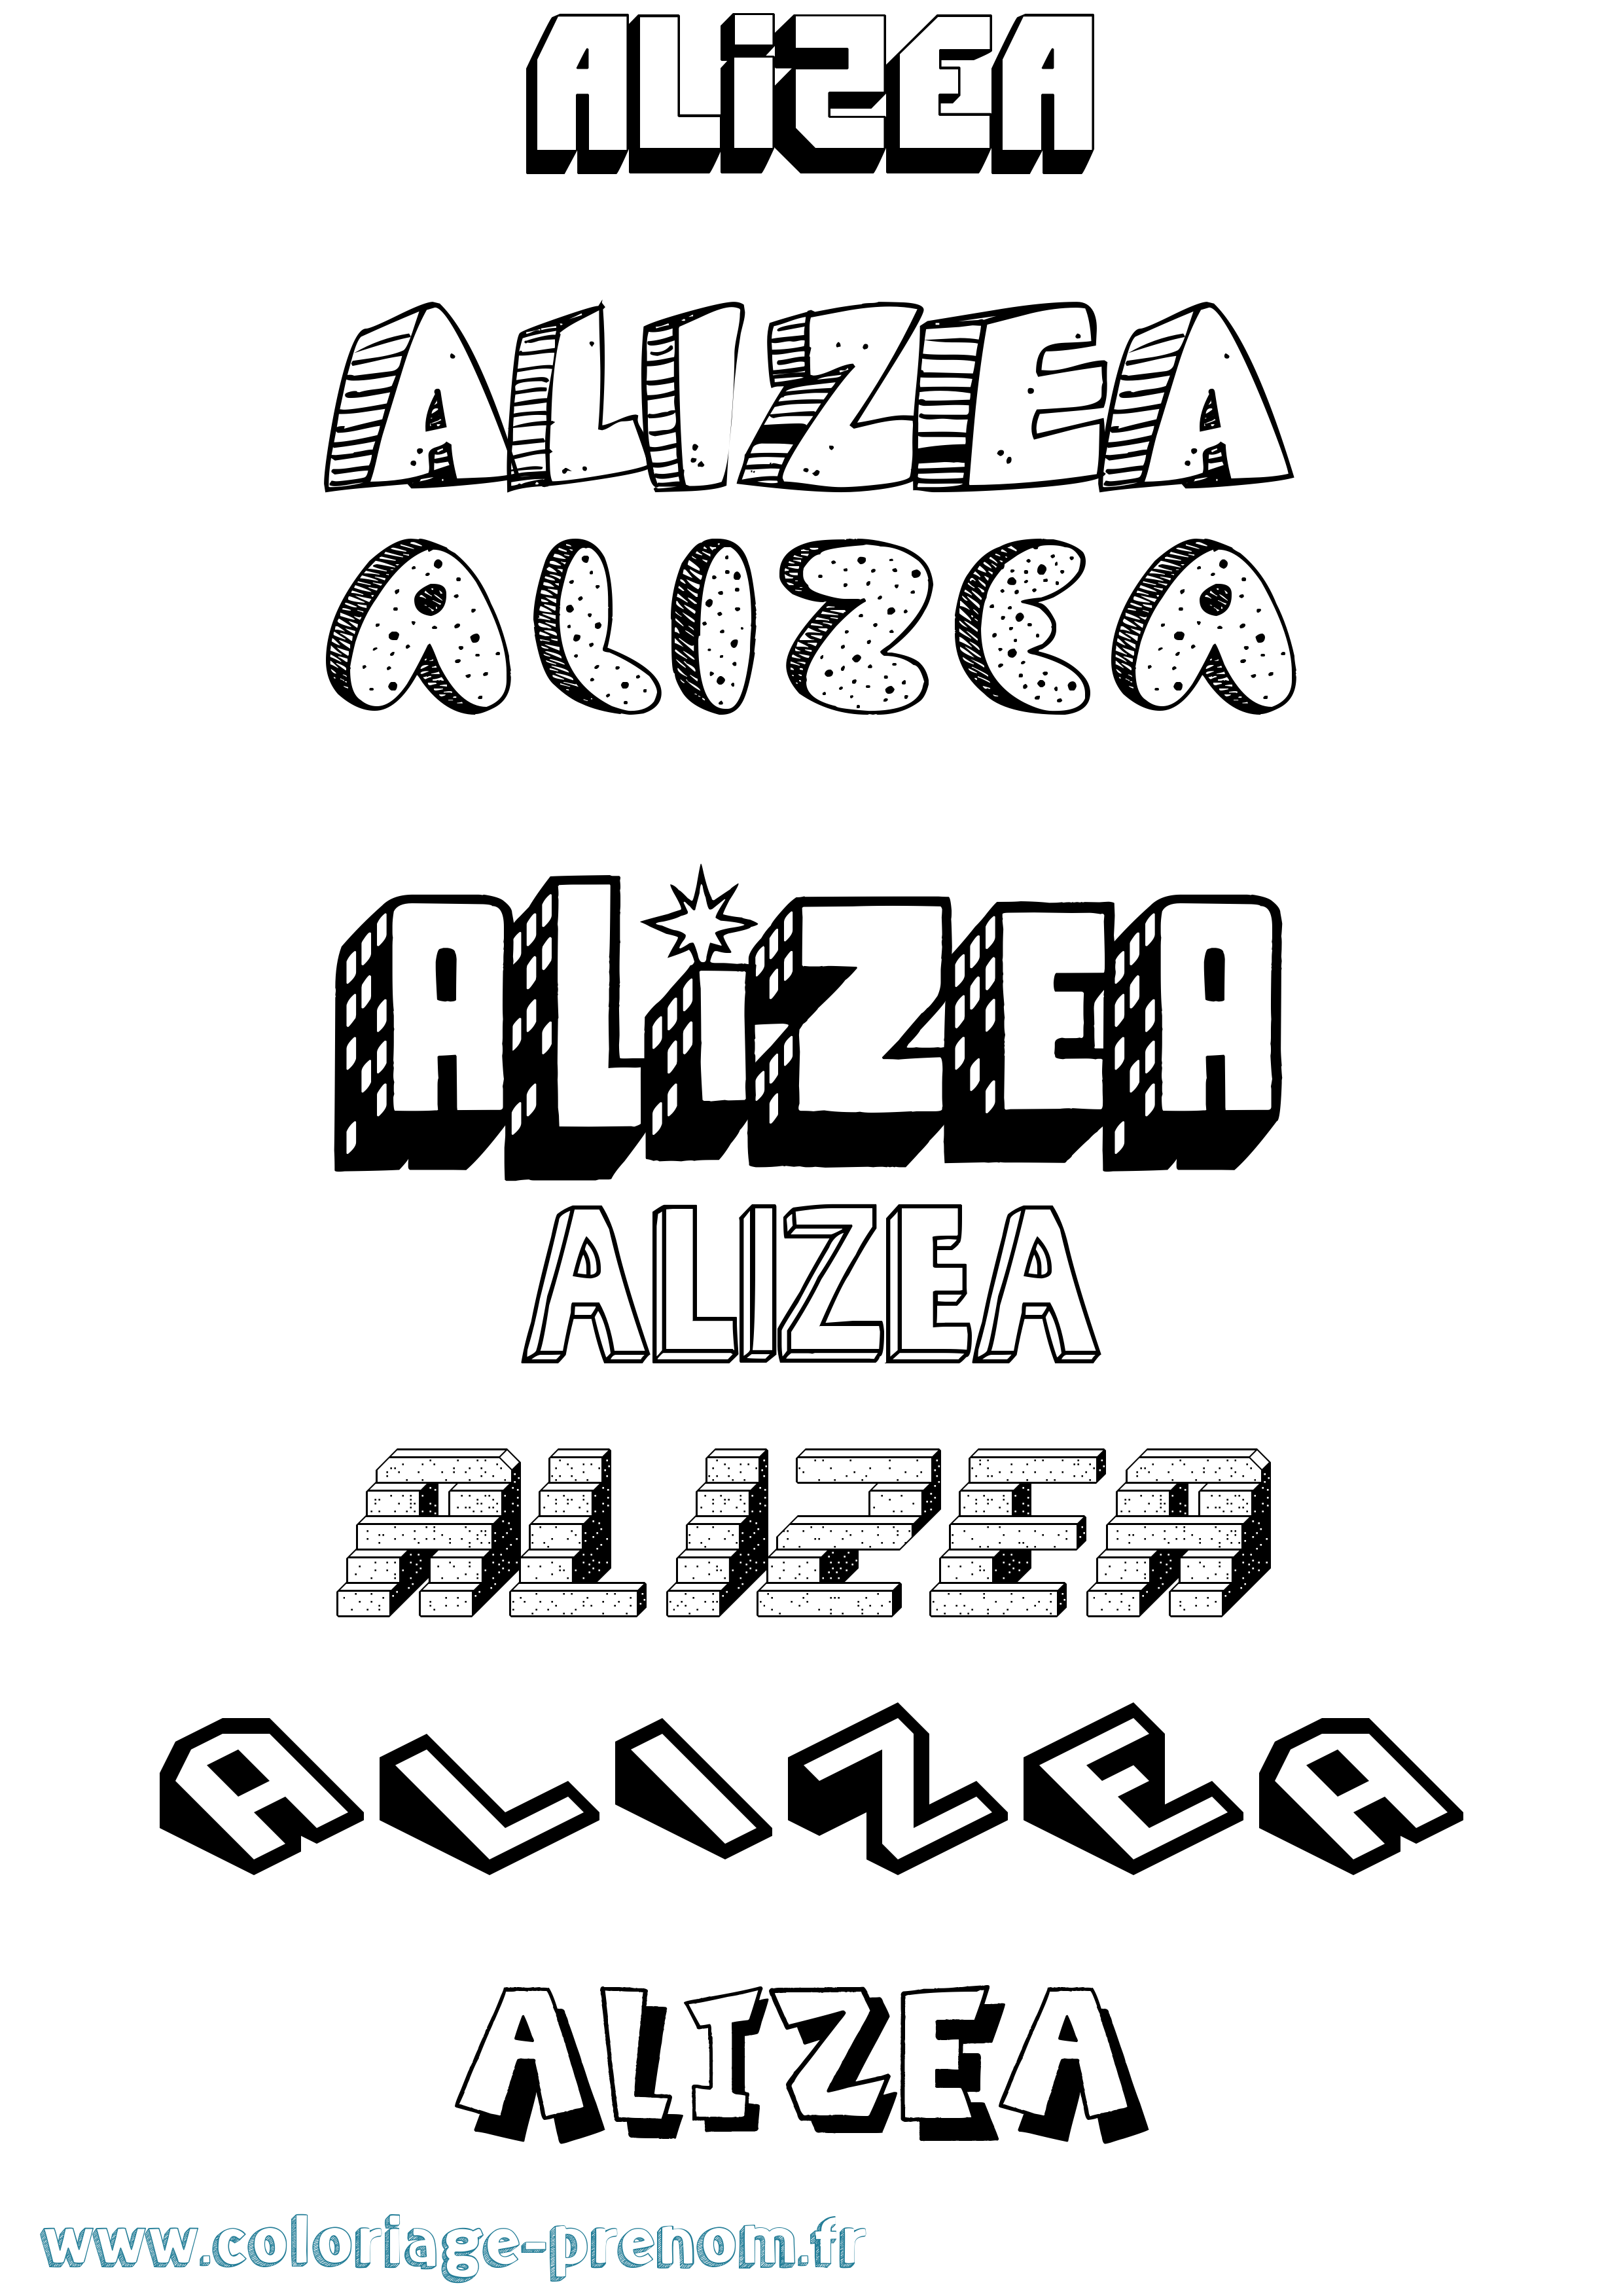 Coloriage prénom Alizea Effet 3D